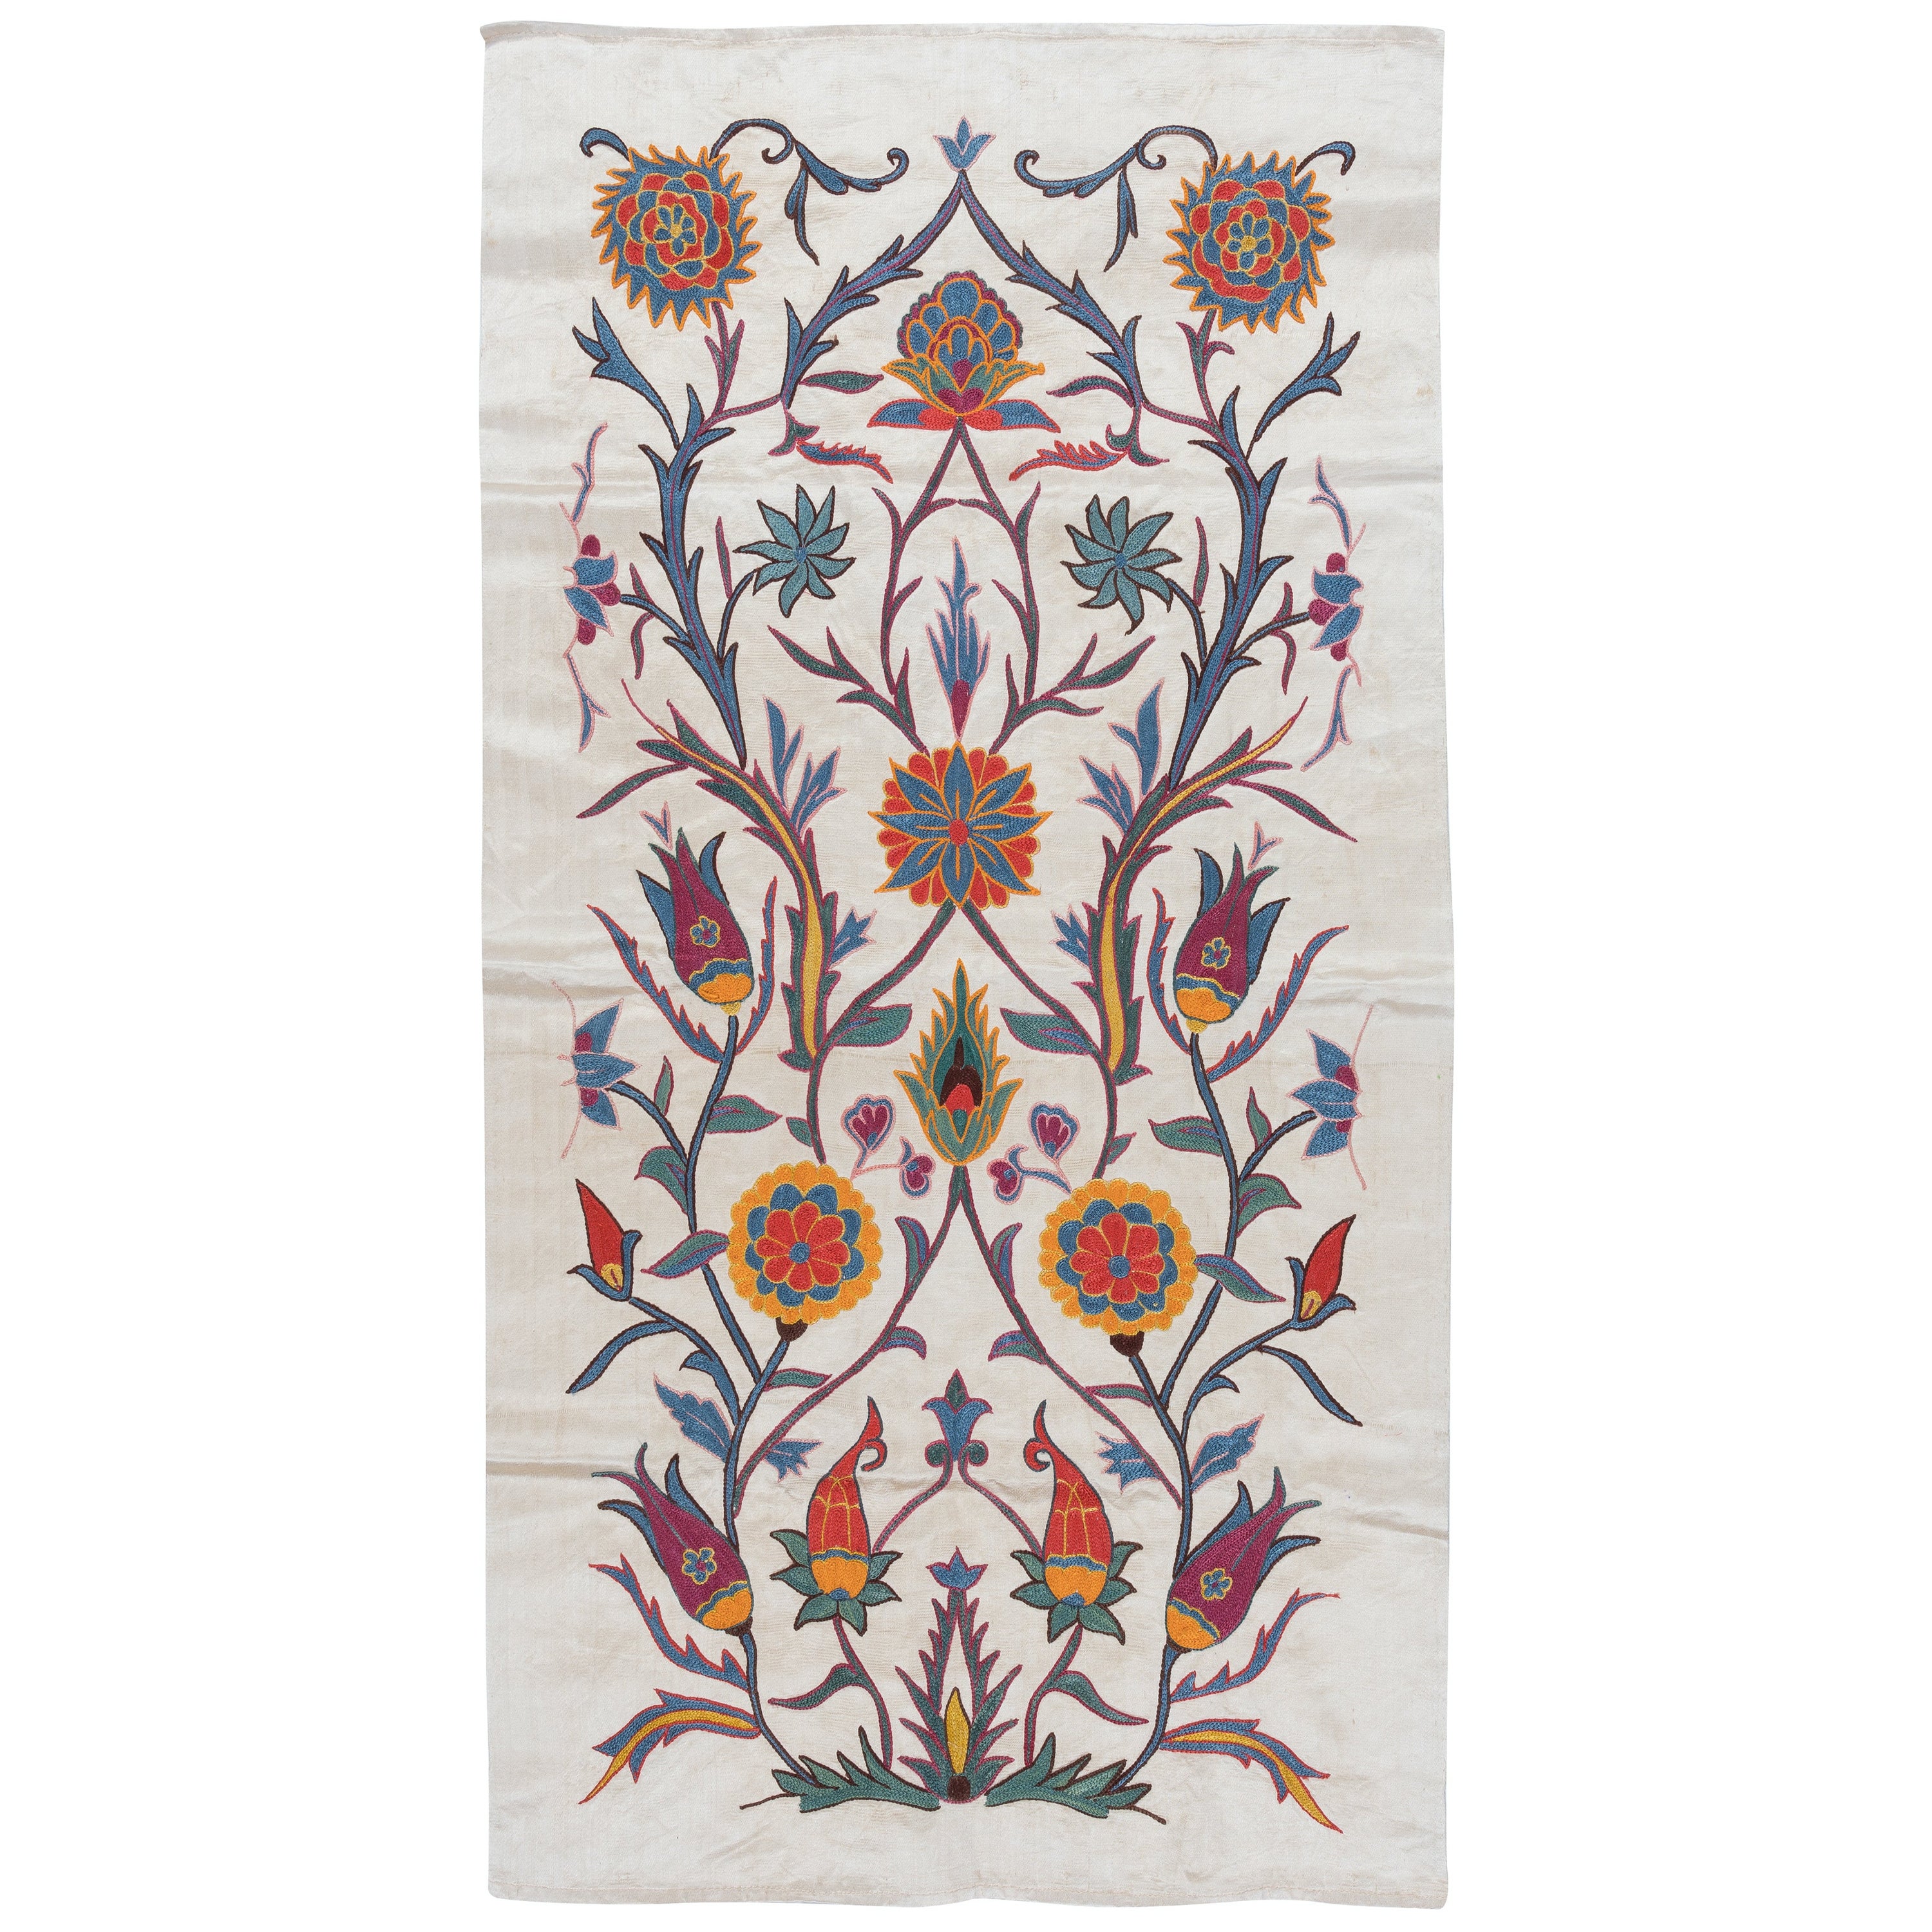 21"x41" 100% soie avec motif floral, tapisserie ouzbeke brodée